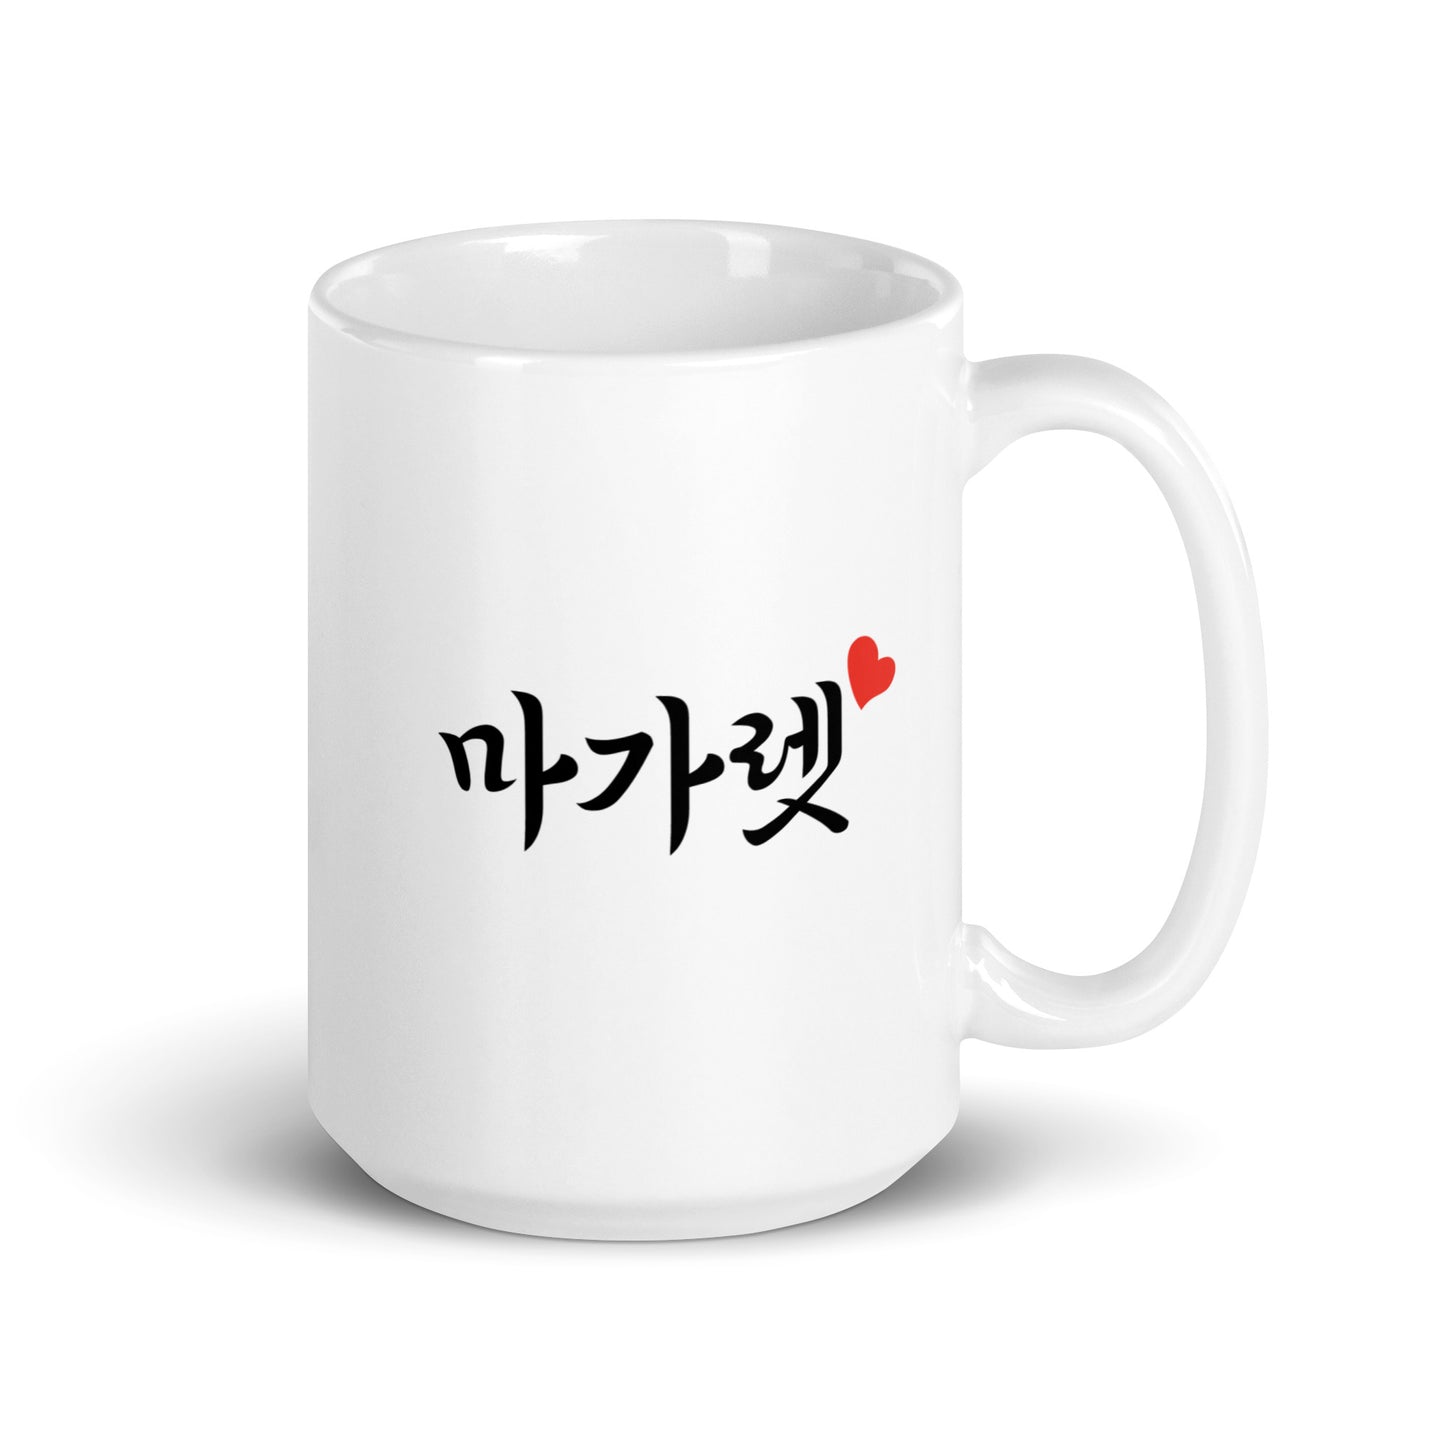 Margaret in Hangul Custom Name Gift Ceramic Mug